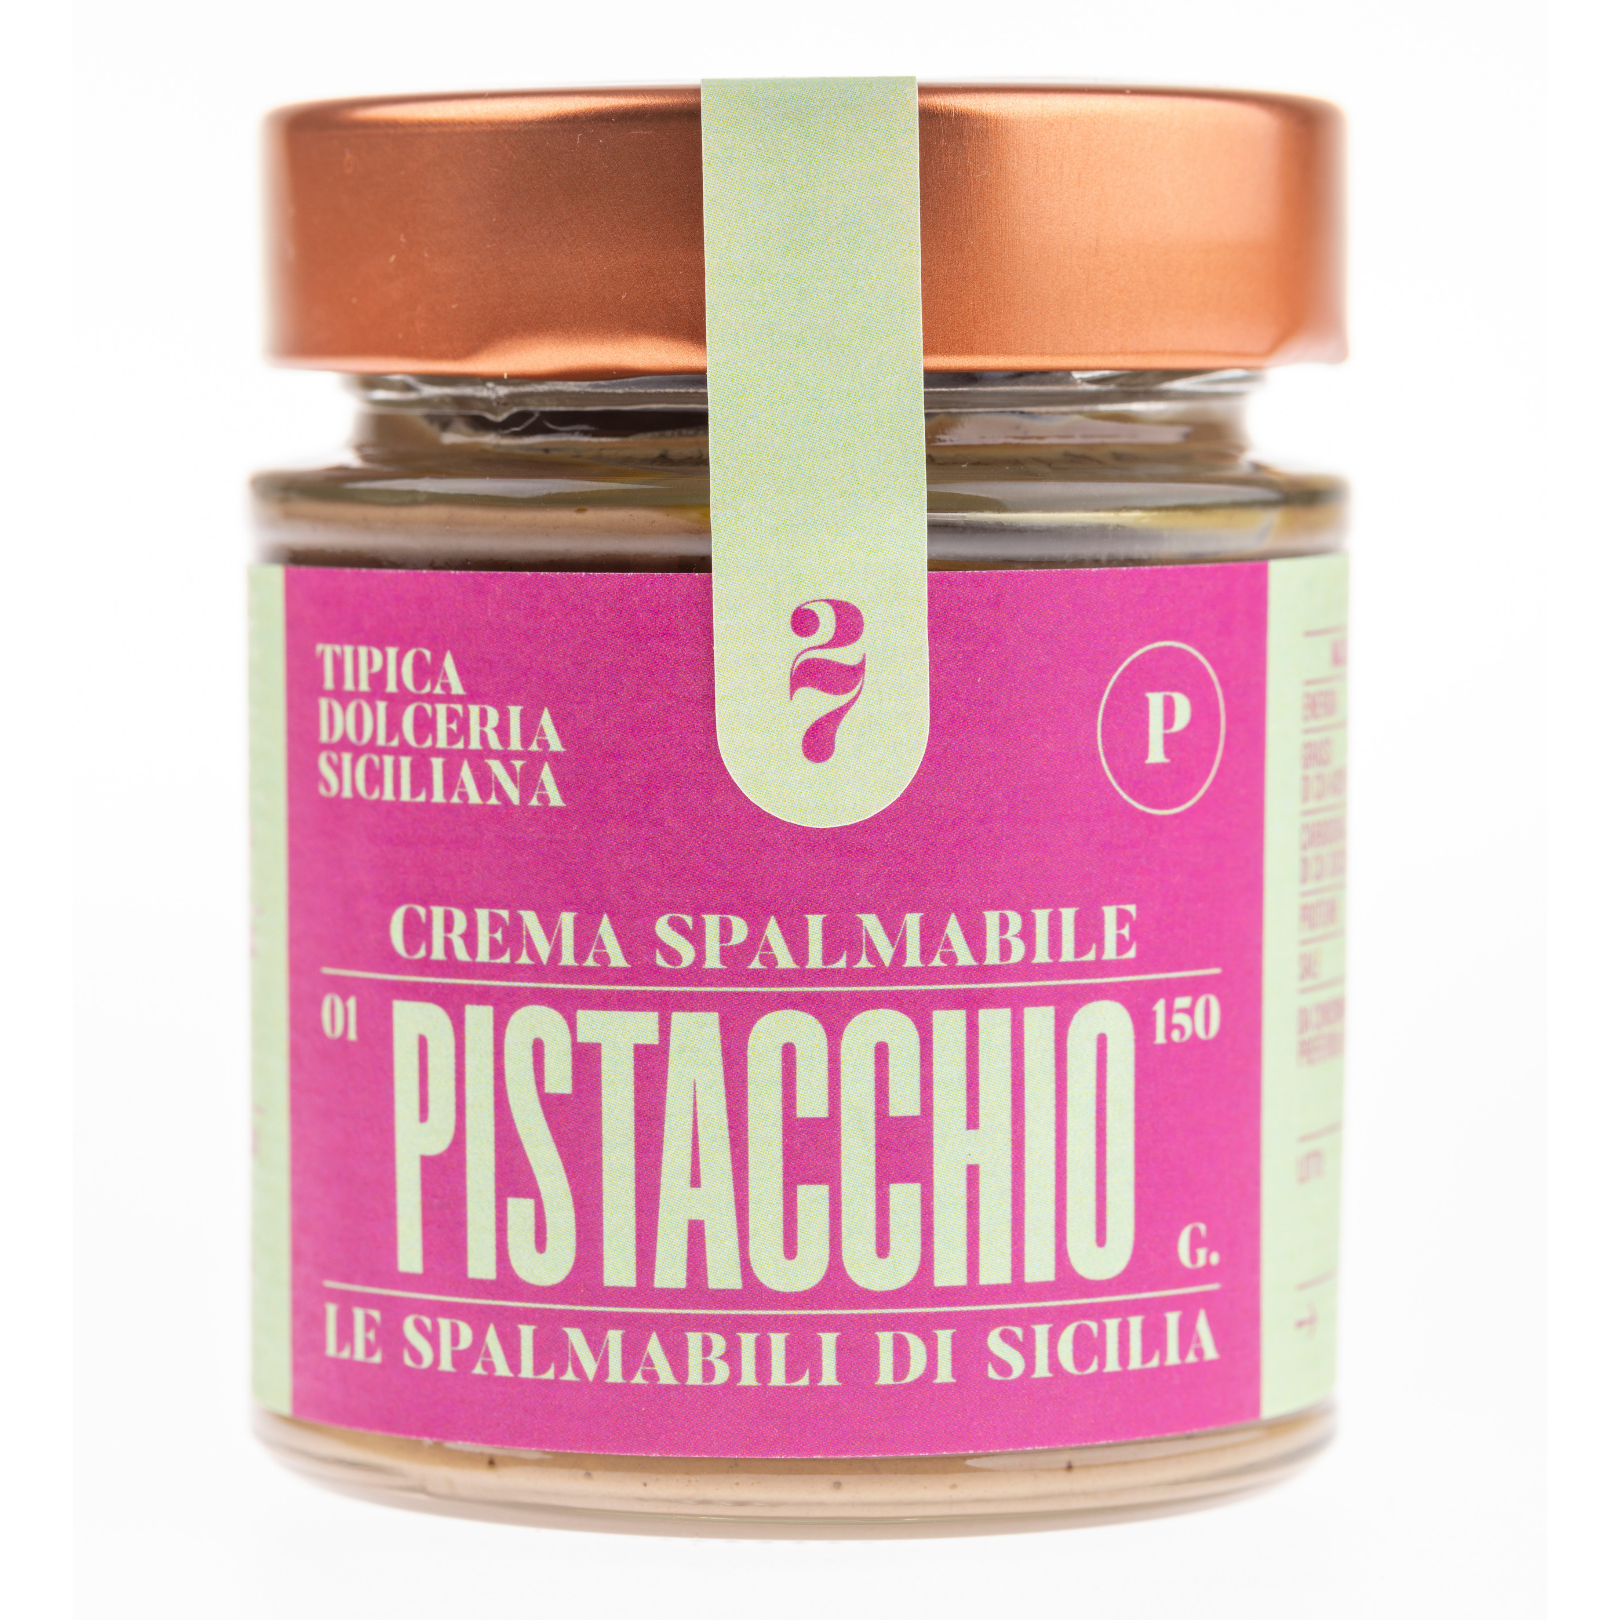 Crema spalmabile artigianale al pistacchio